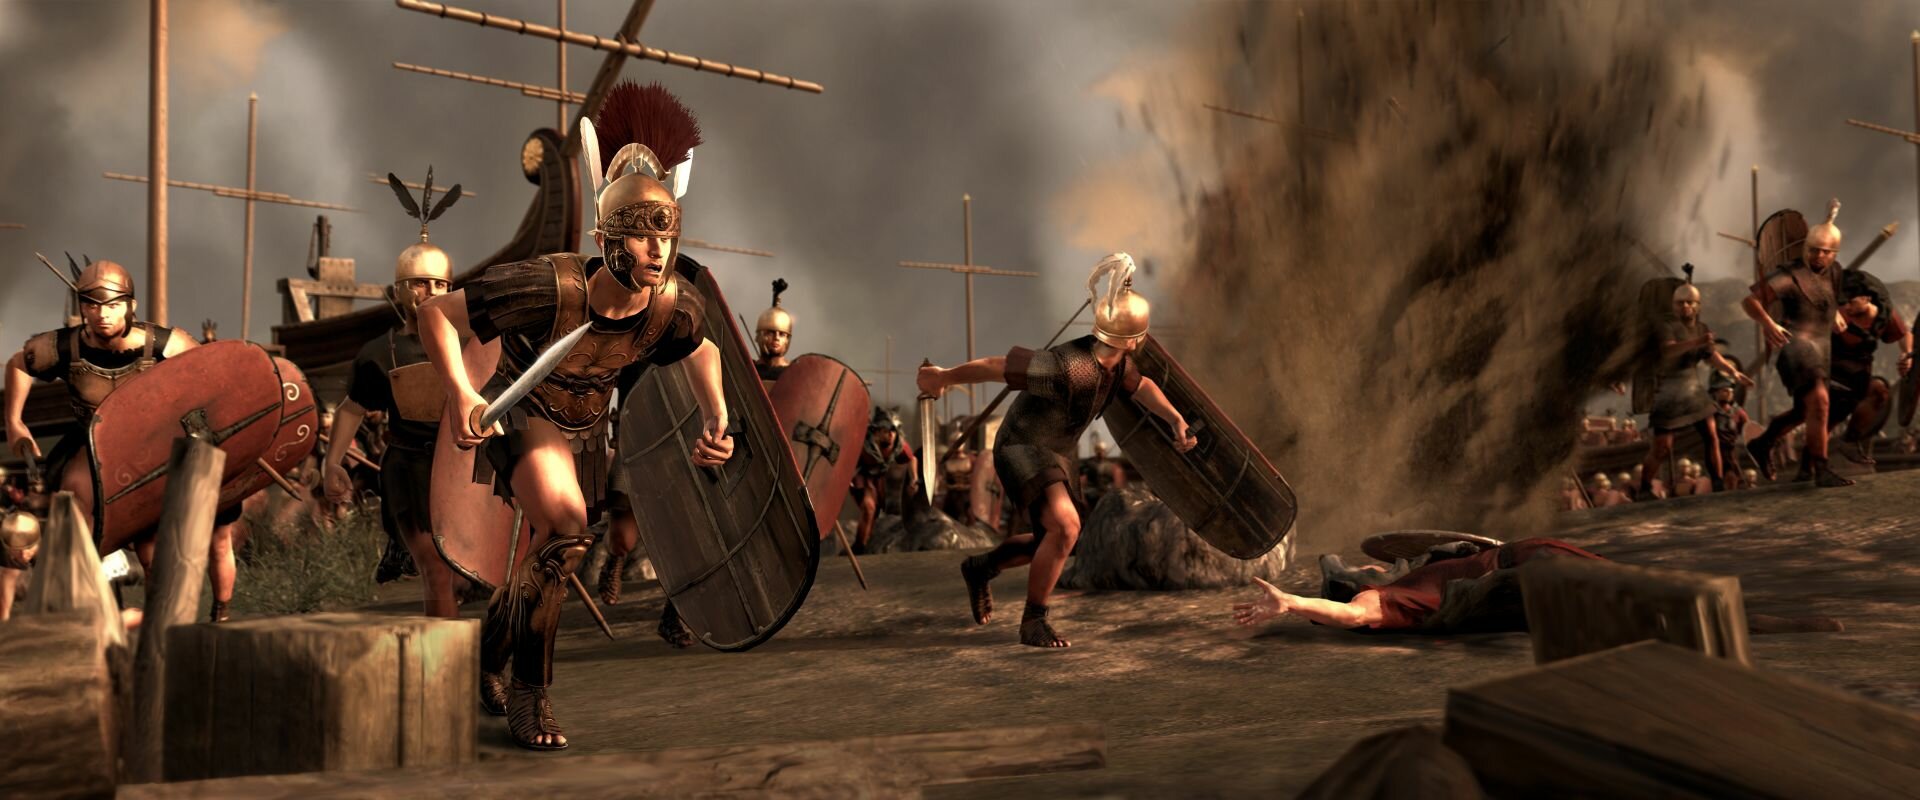 Интервью для портала СiЧъ про Total War: Rome 2 на Игромир 2012